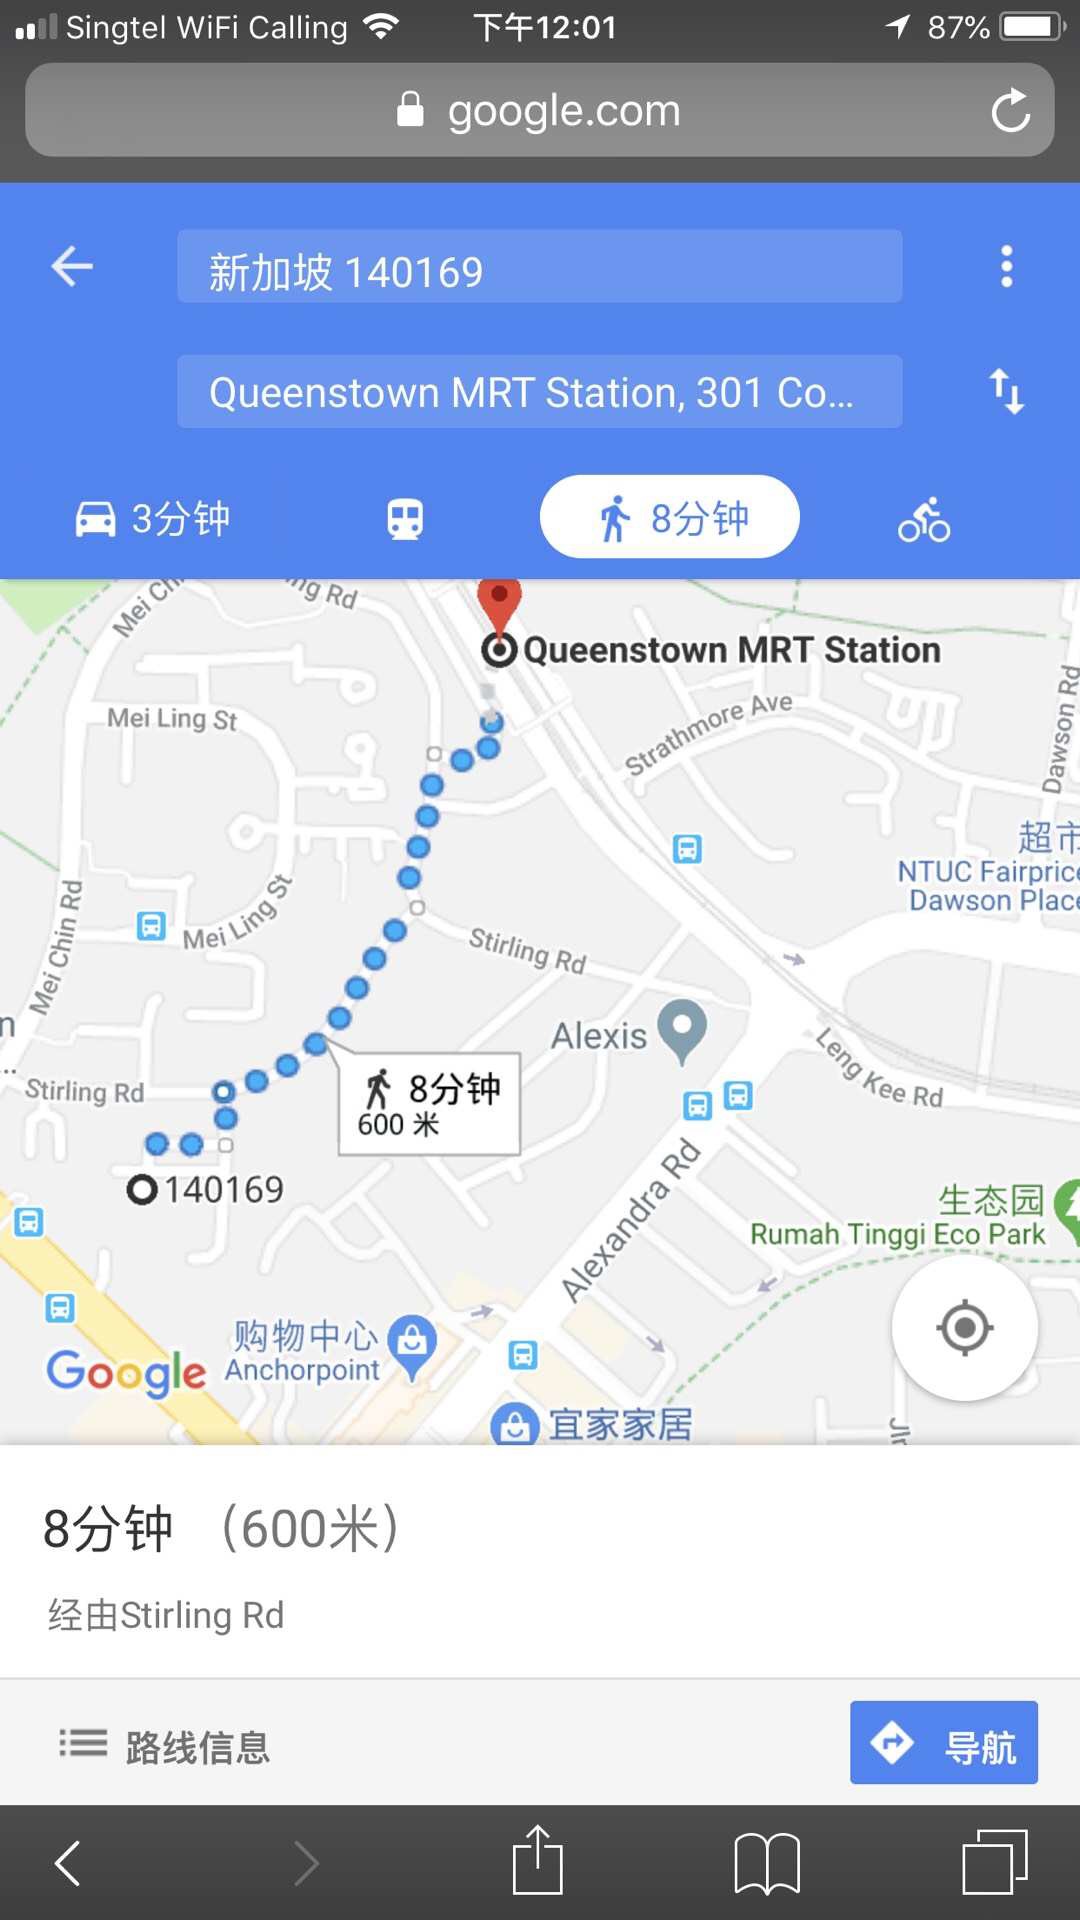 地铁路线图 (MRT Map)